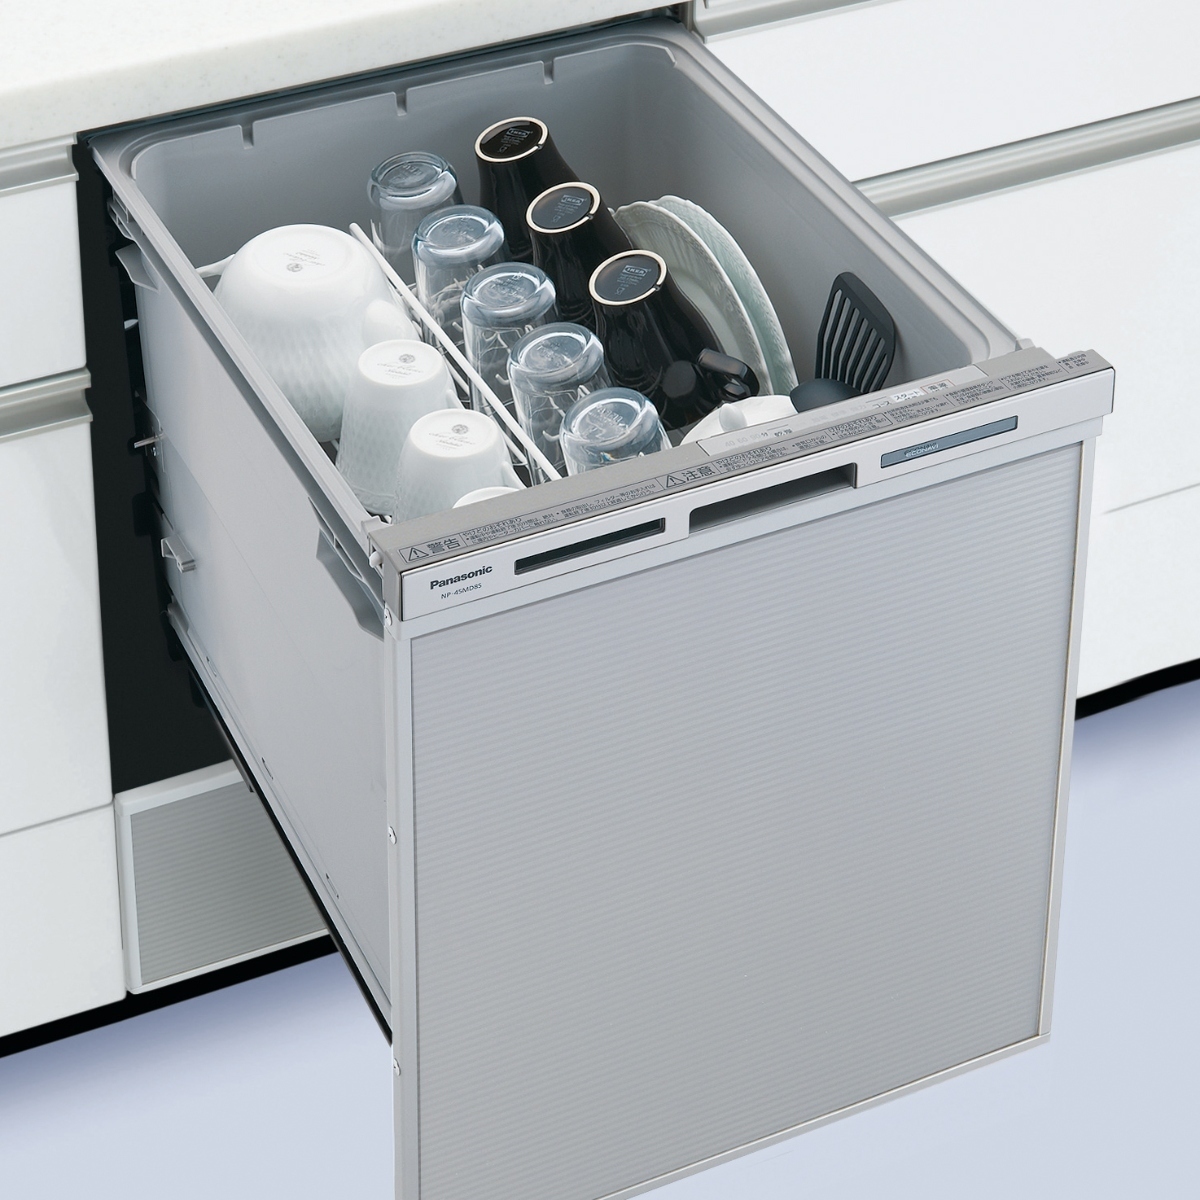 メーカーに聞く】食洗機の正しい掃除方法とは? 使い方のコツもご紹介! | 東京ガス ウチコト